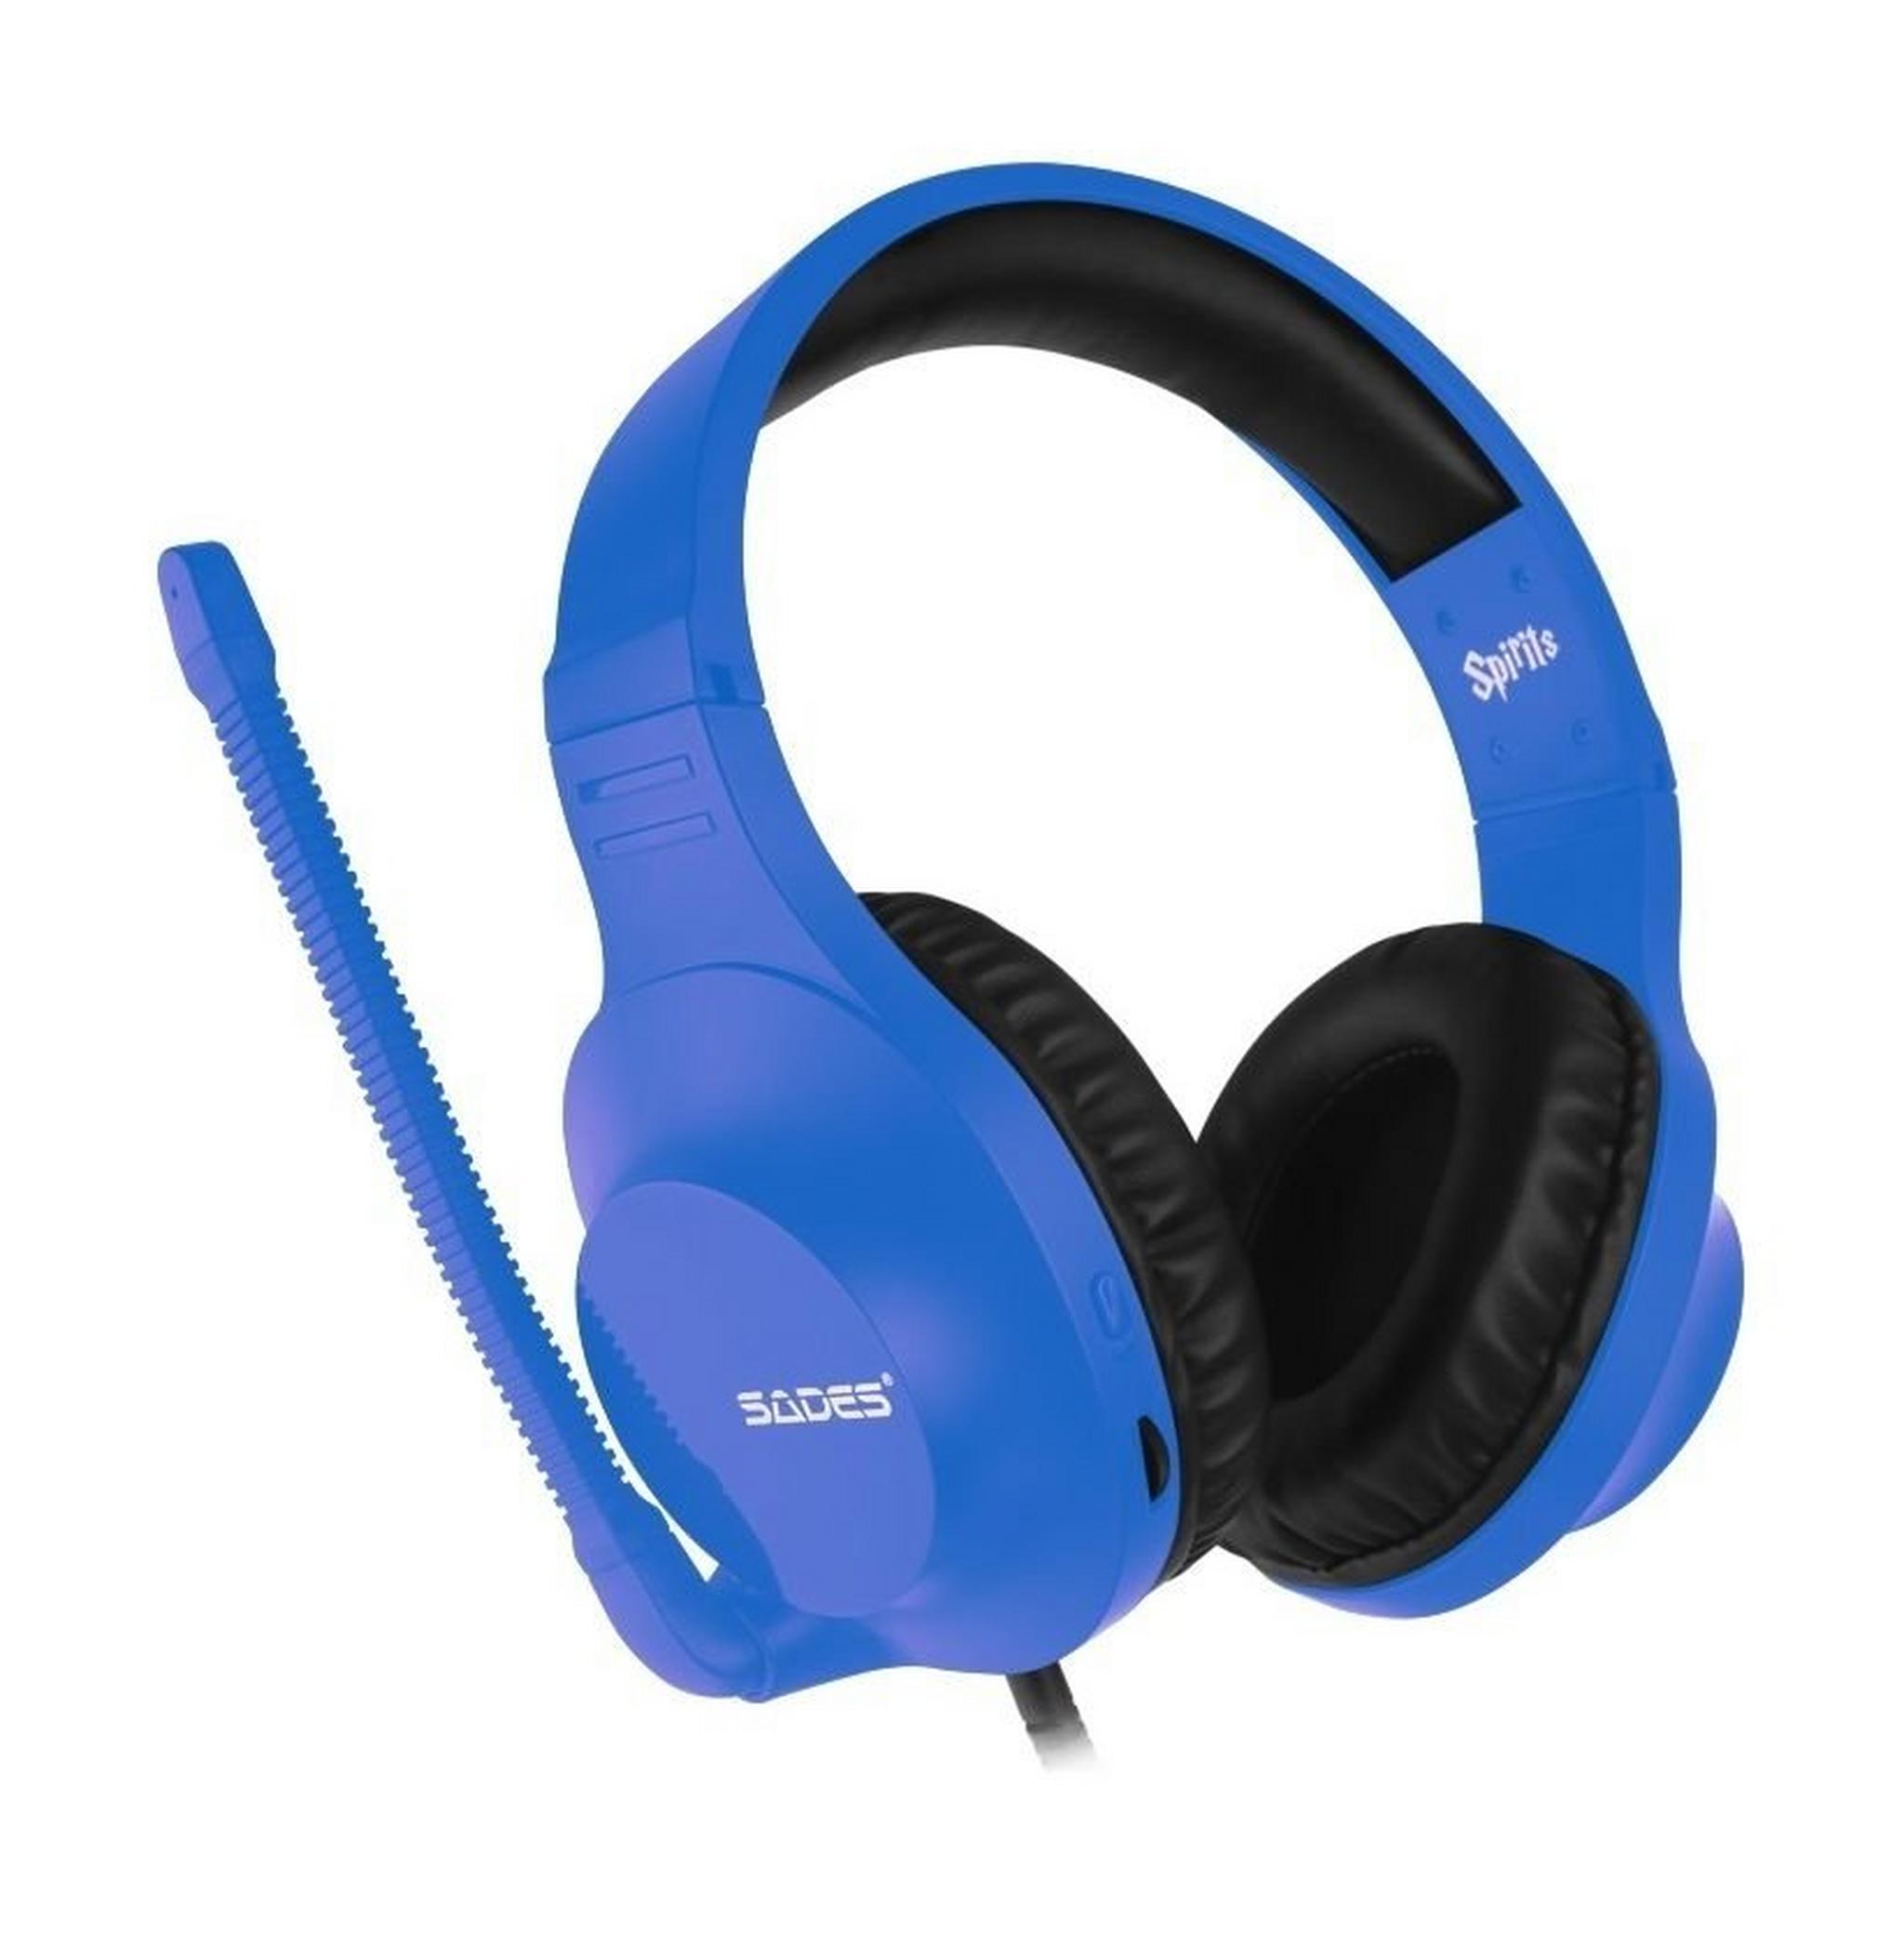 Sades Spirits Wired Gaming Headset - Blue